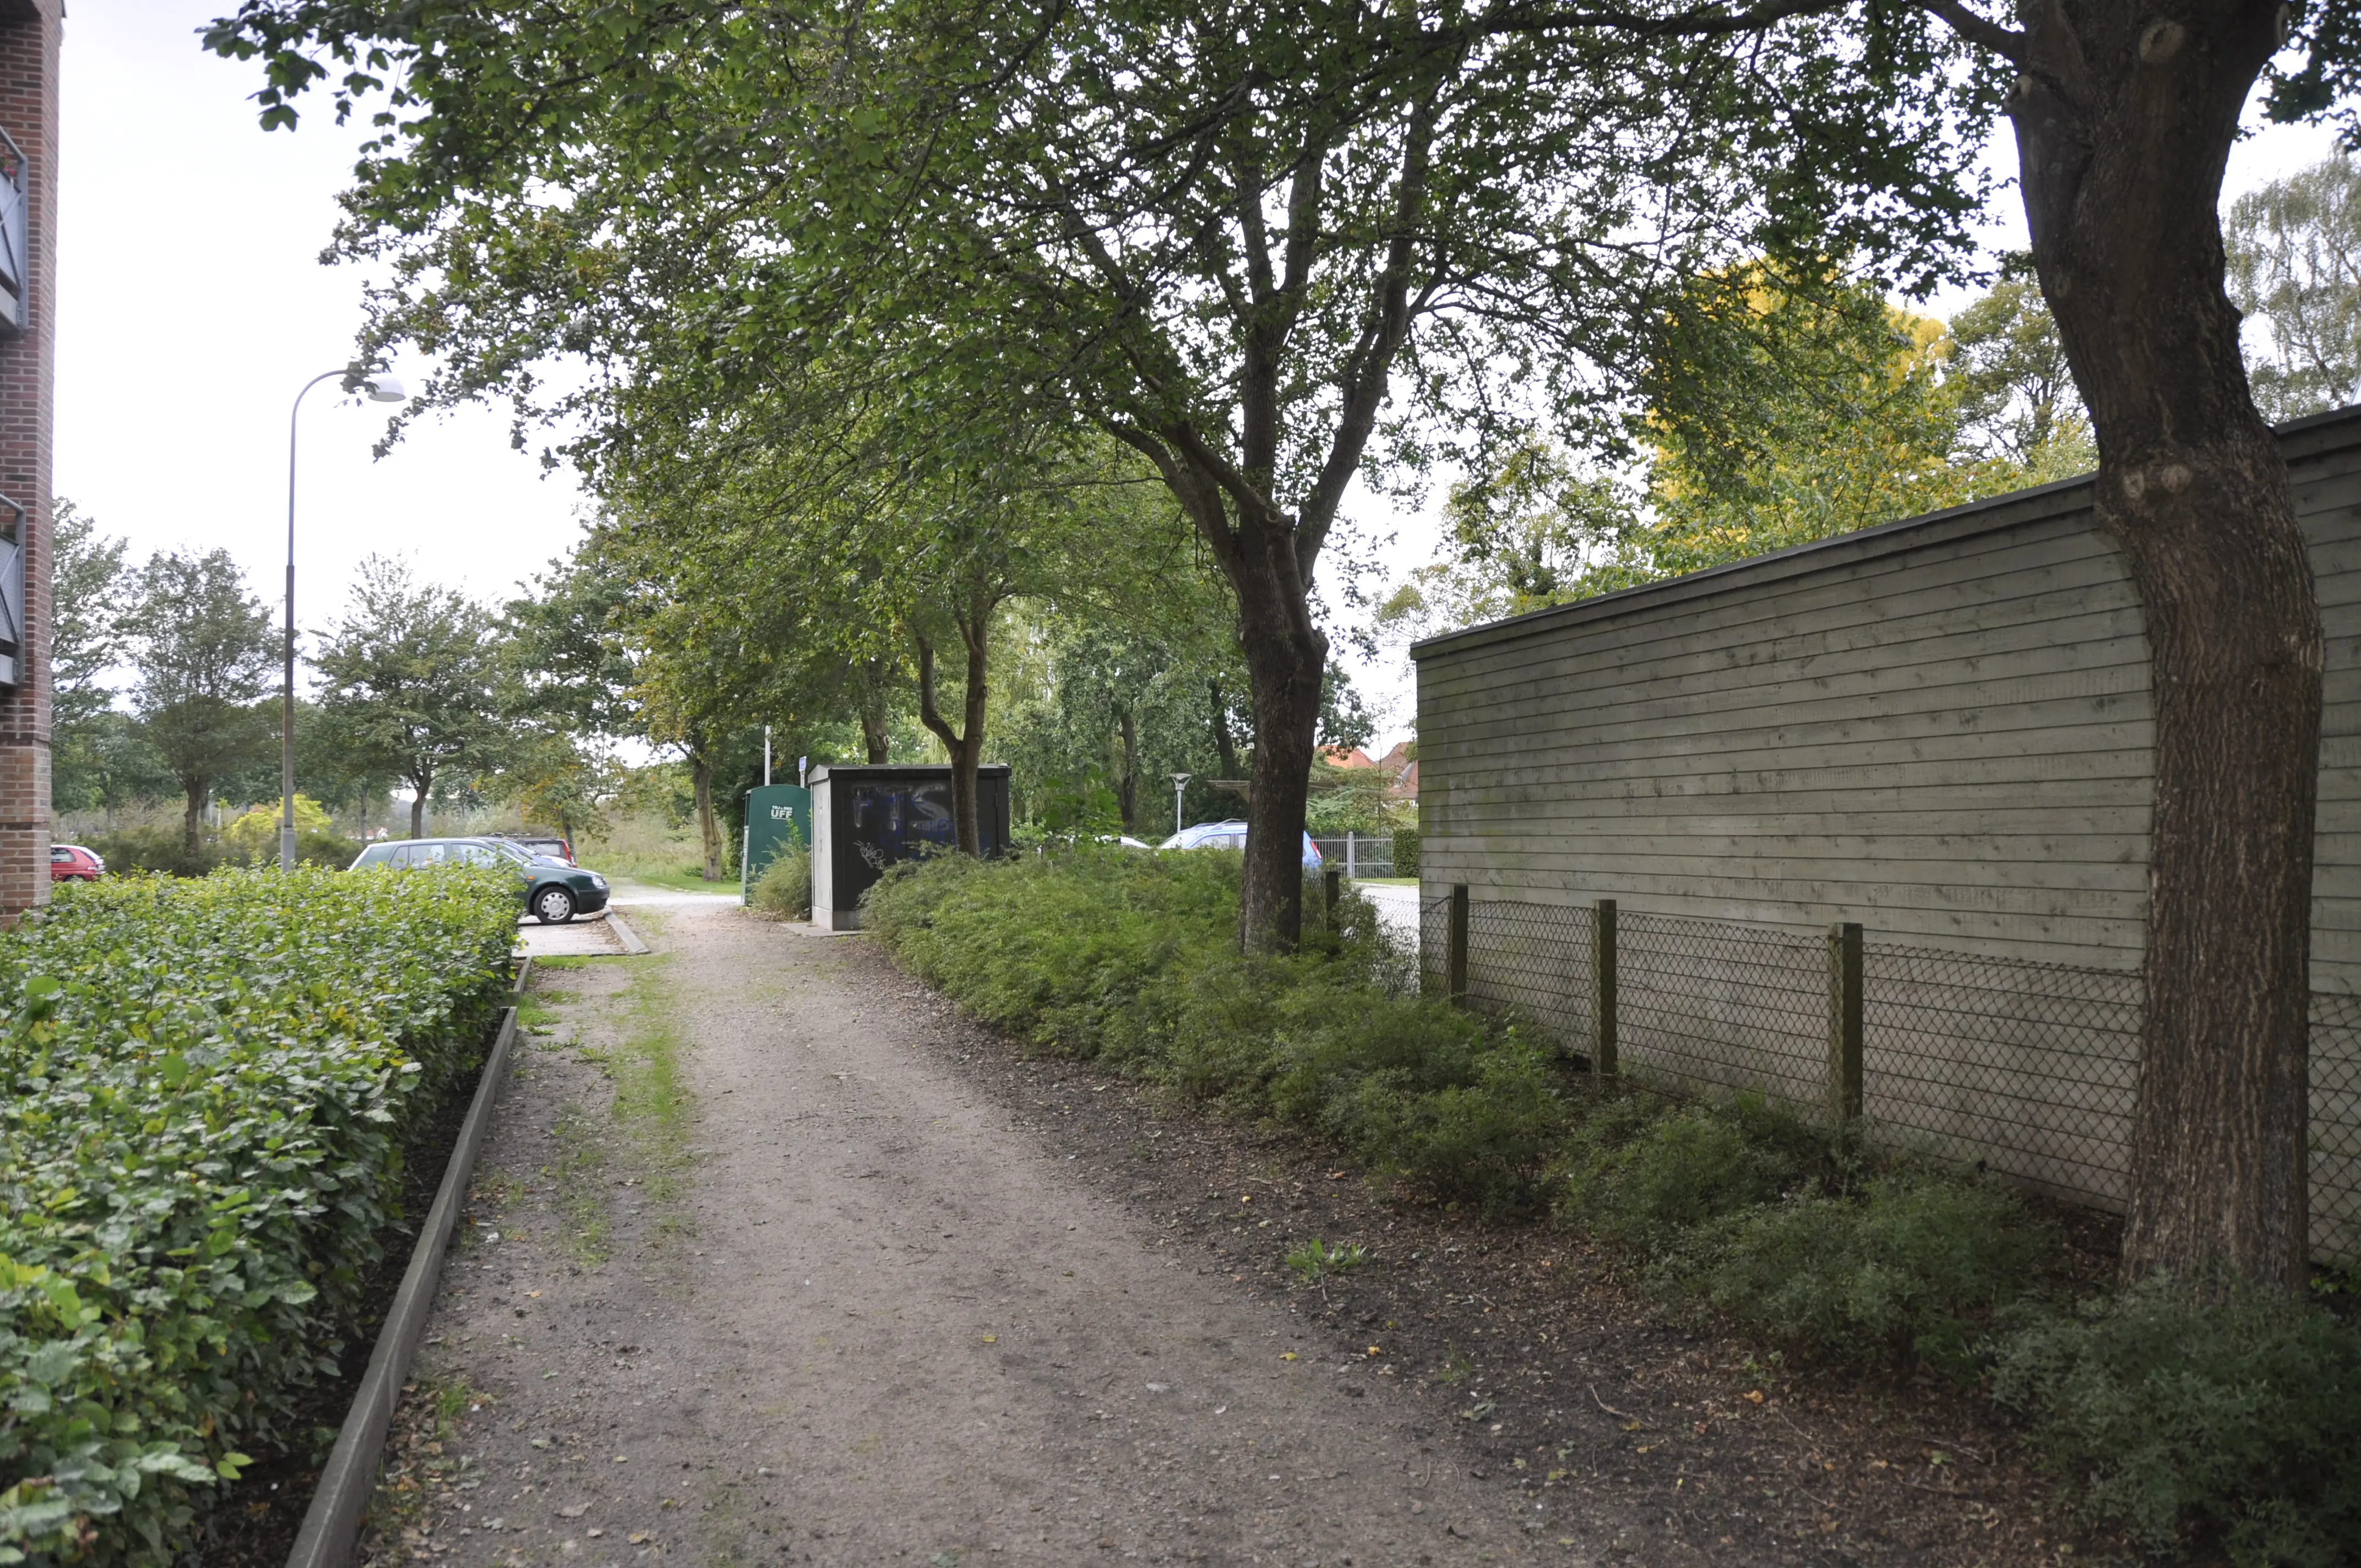 Billede af Aabenraa Sønderport Holdeplads, som lå til højre for træerne i midten af billedet.